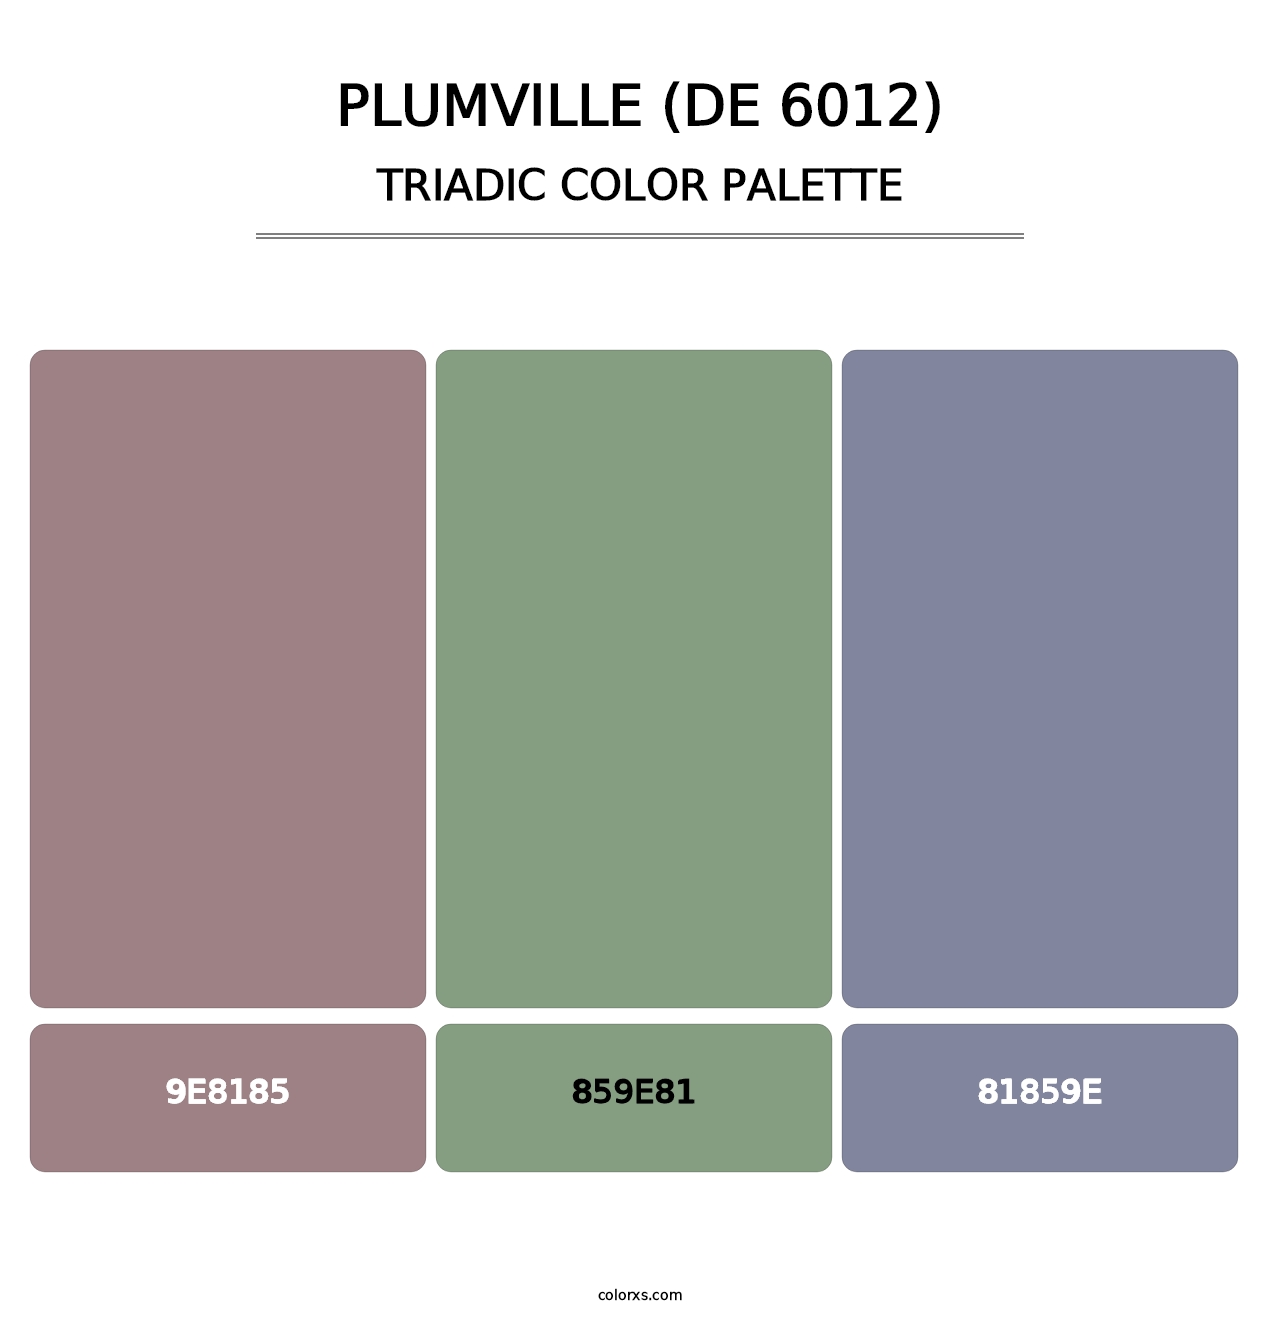 Plumville (DE 6012) - Triadic Color Palette